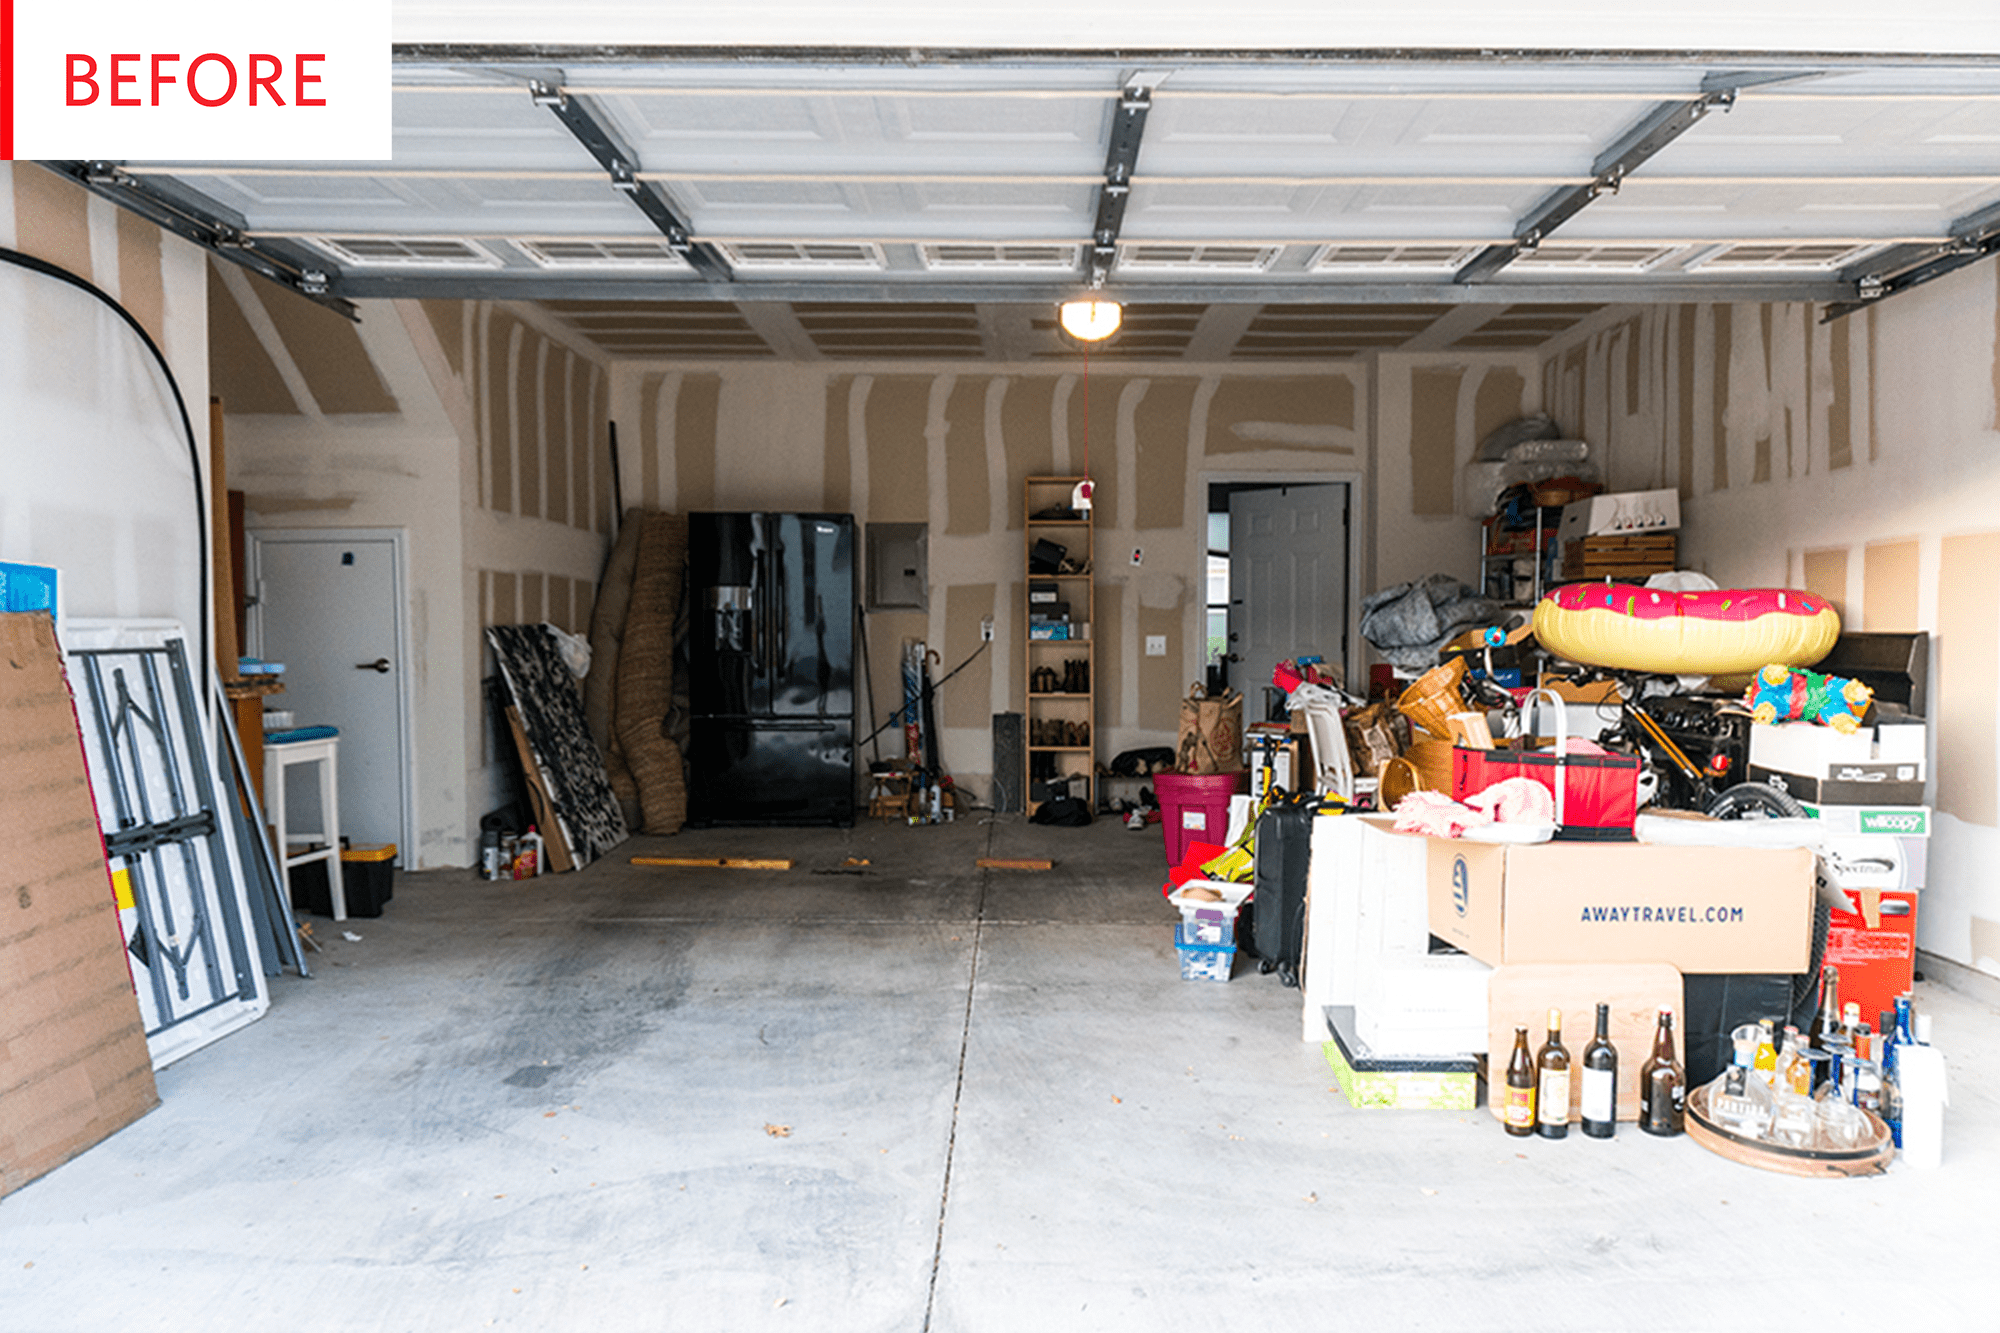 Garage & Holiday Storage Labels Modern Minimalist Design 